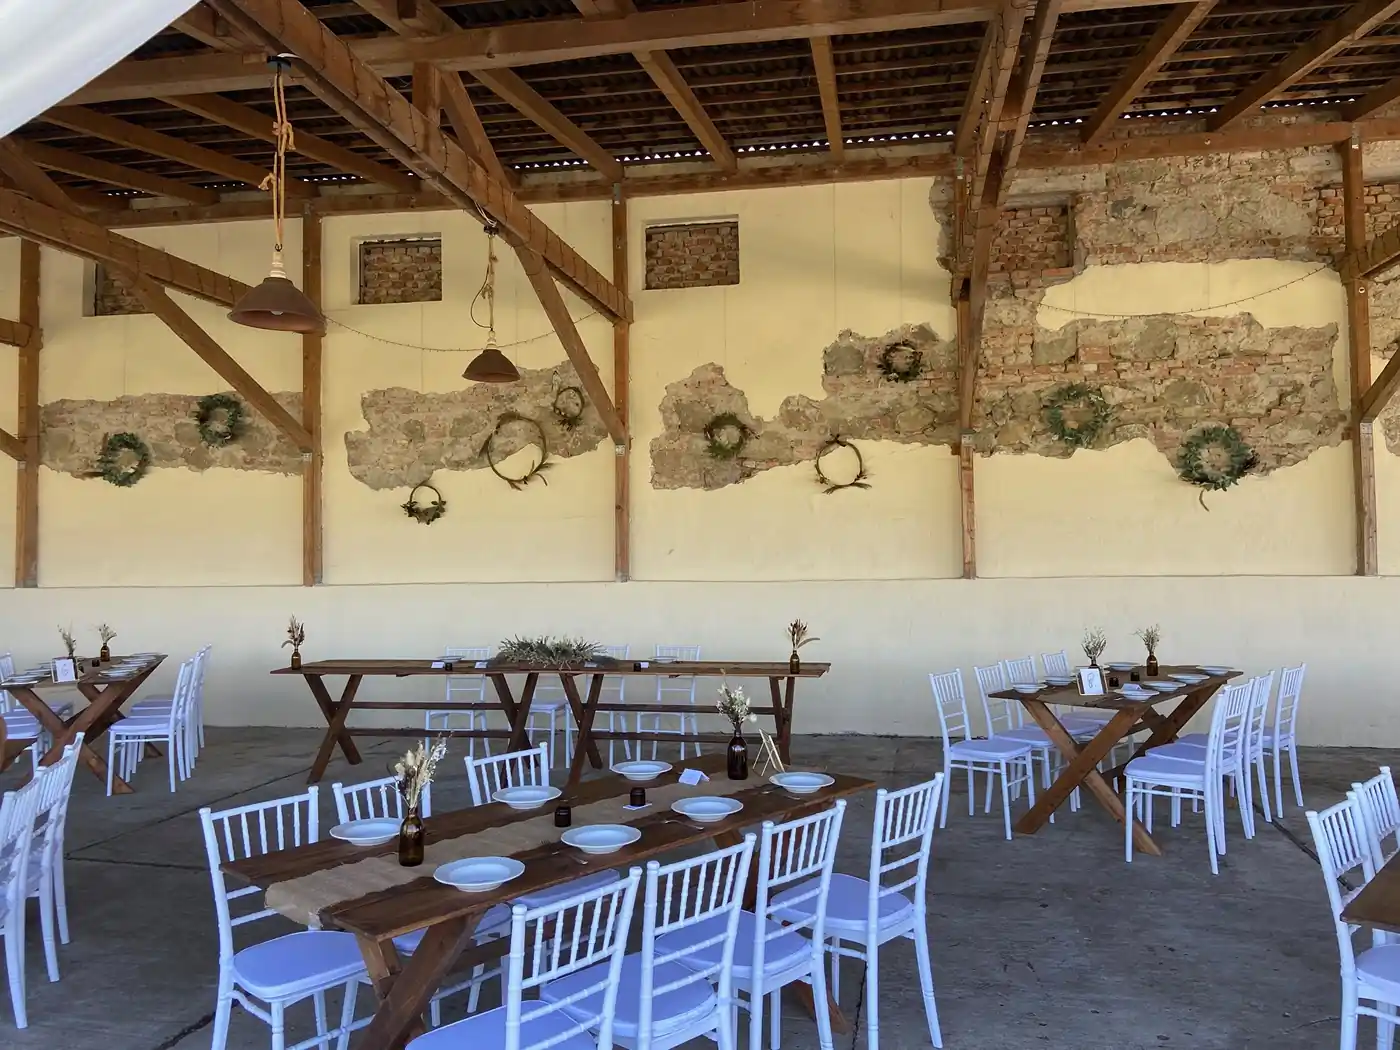 Rusztikus kialakítású pajta, ideális vidéki esküvői helyszín asztalokkal és székekkel.